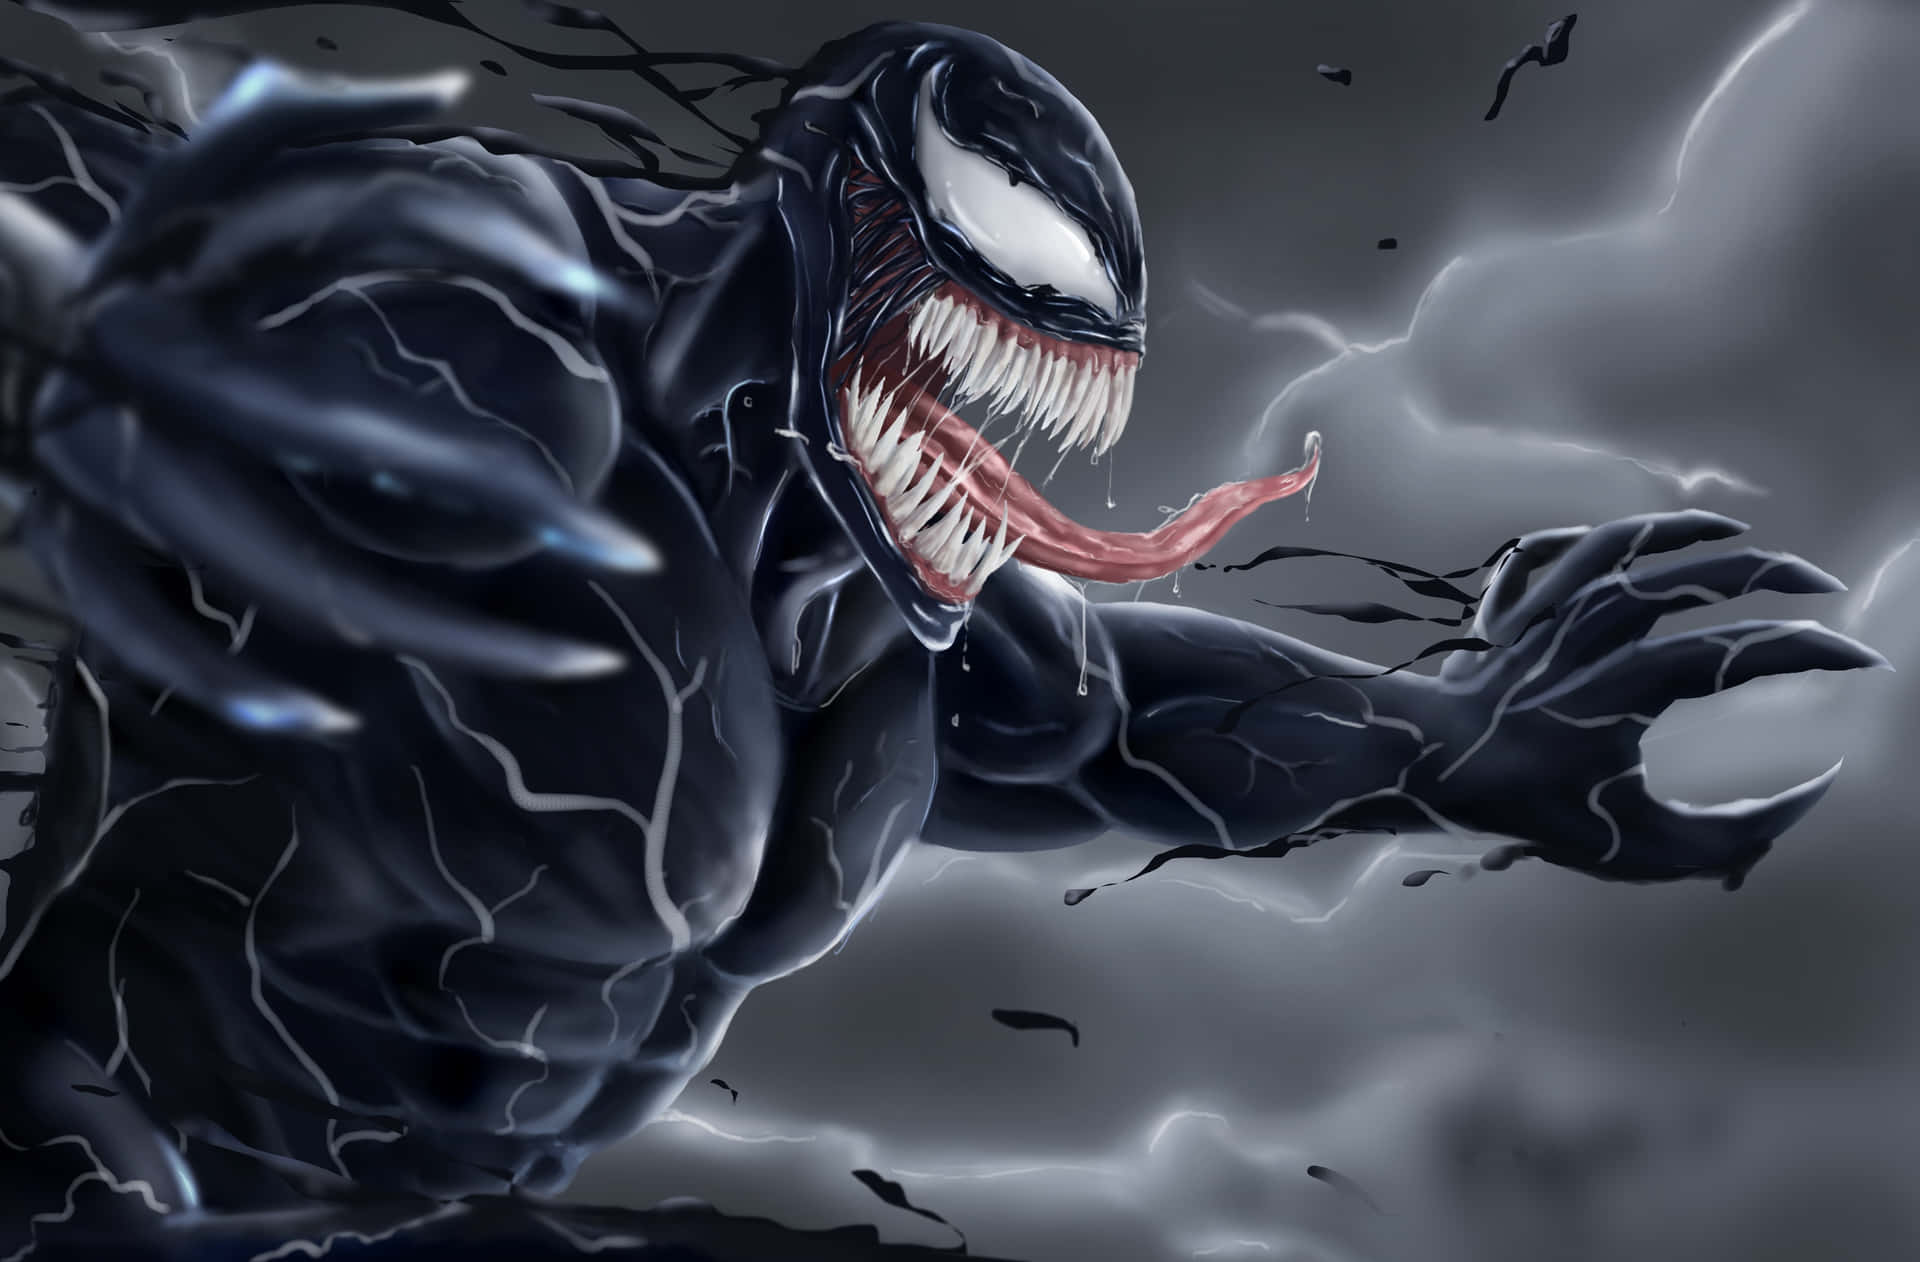 Feel the power of Venom!